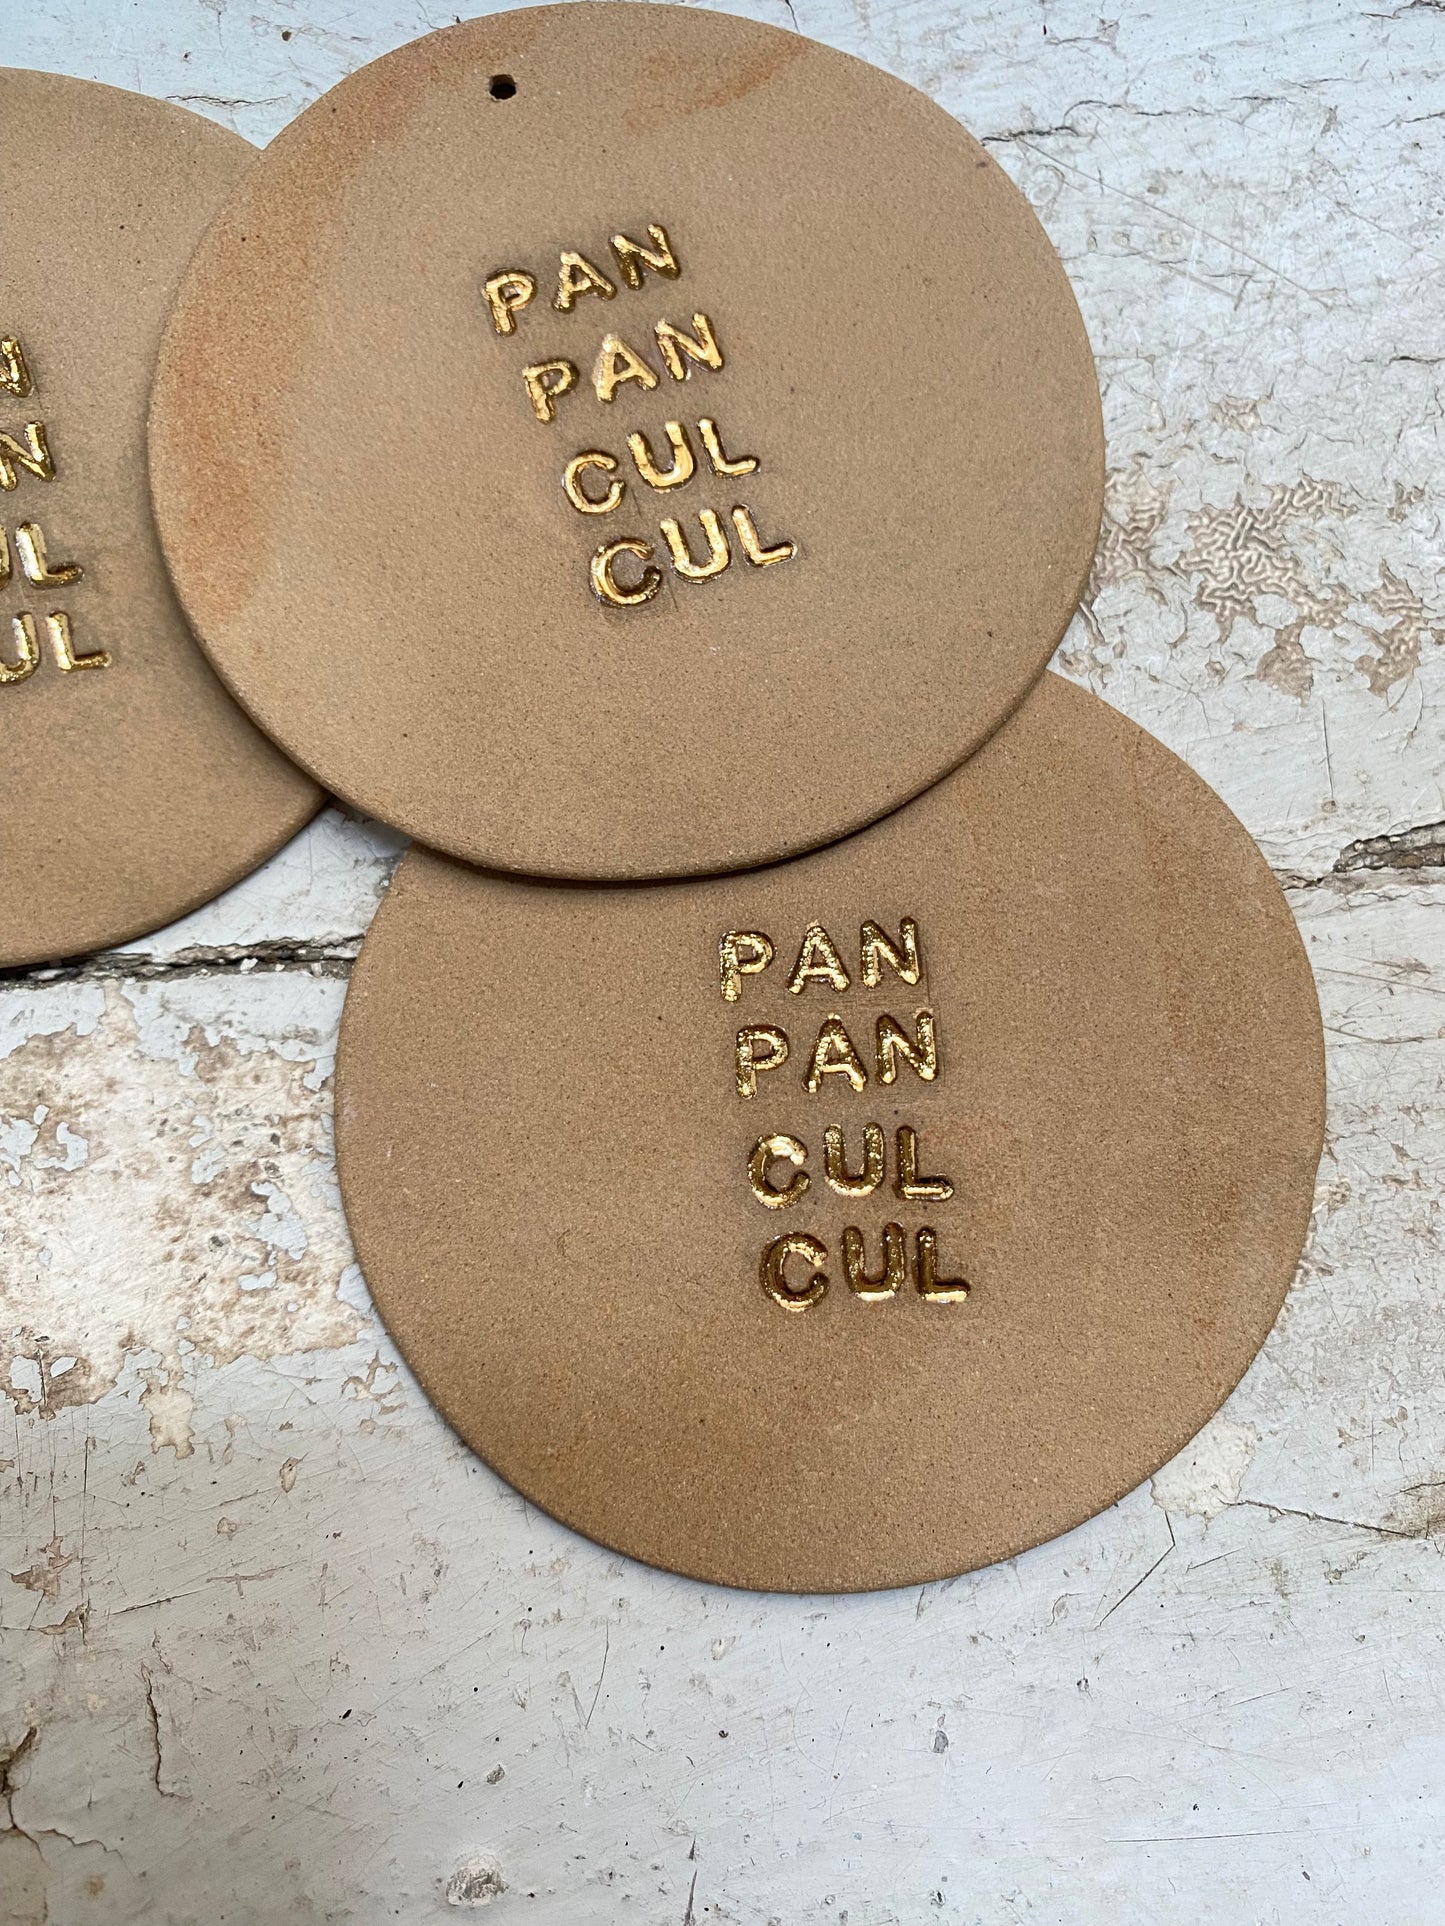 PAN PAN CUL CUL